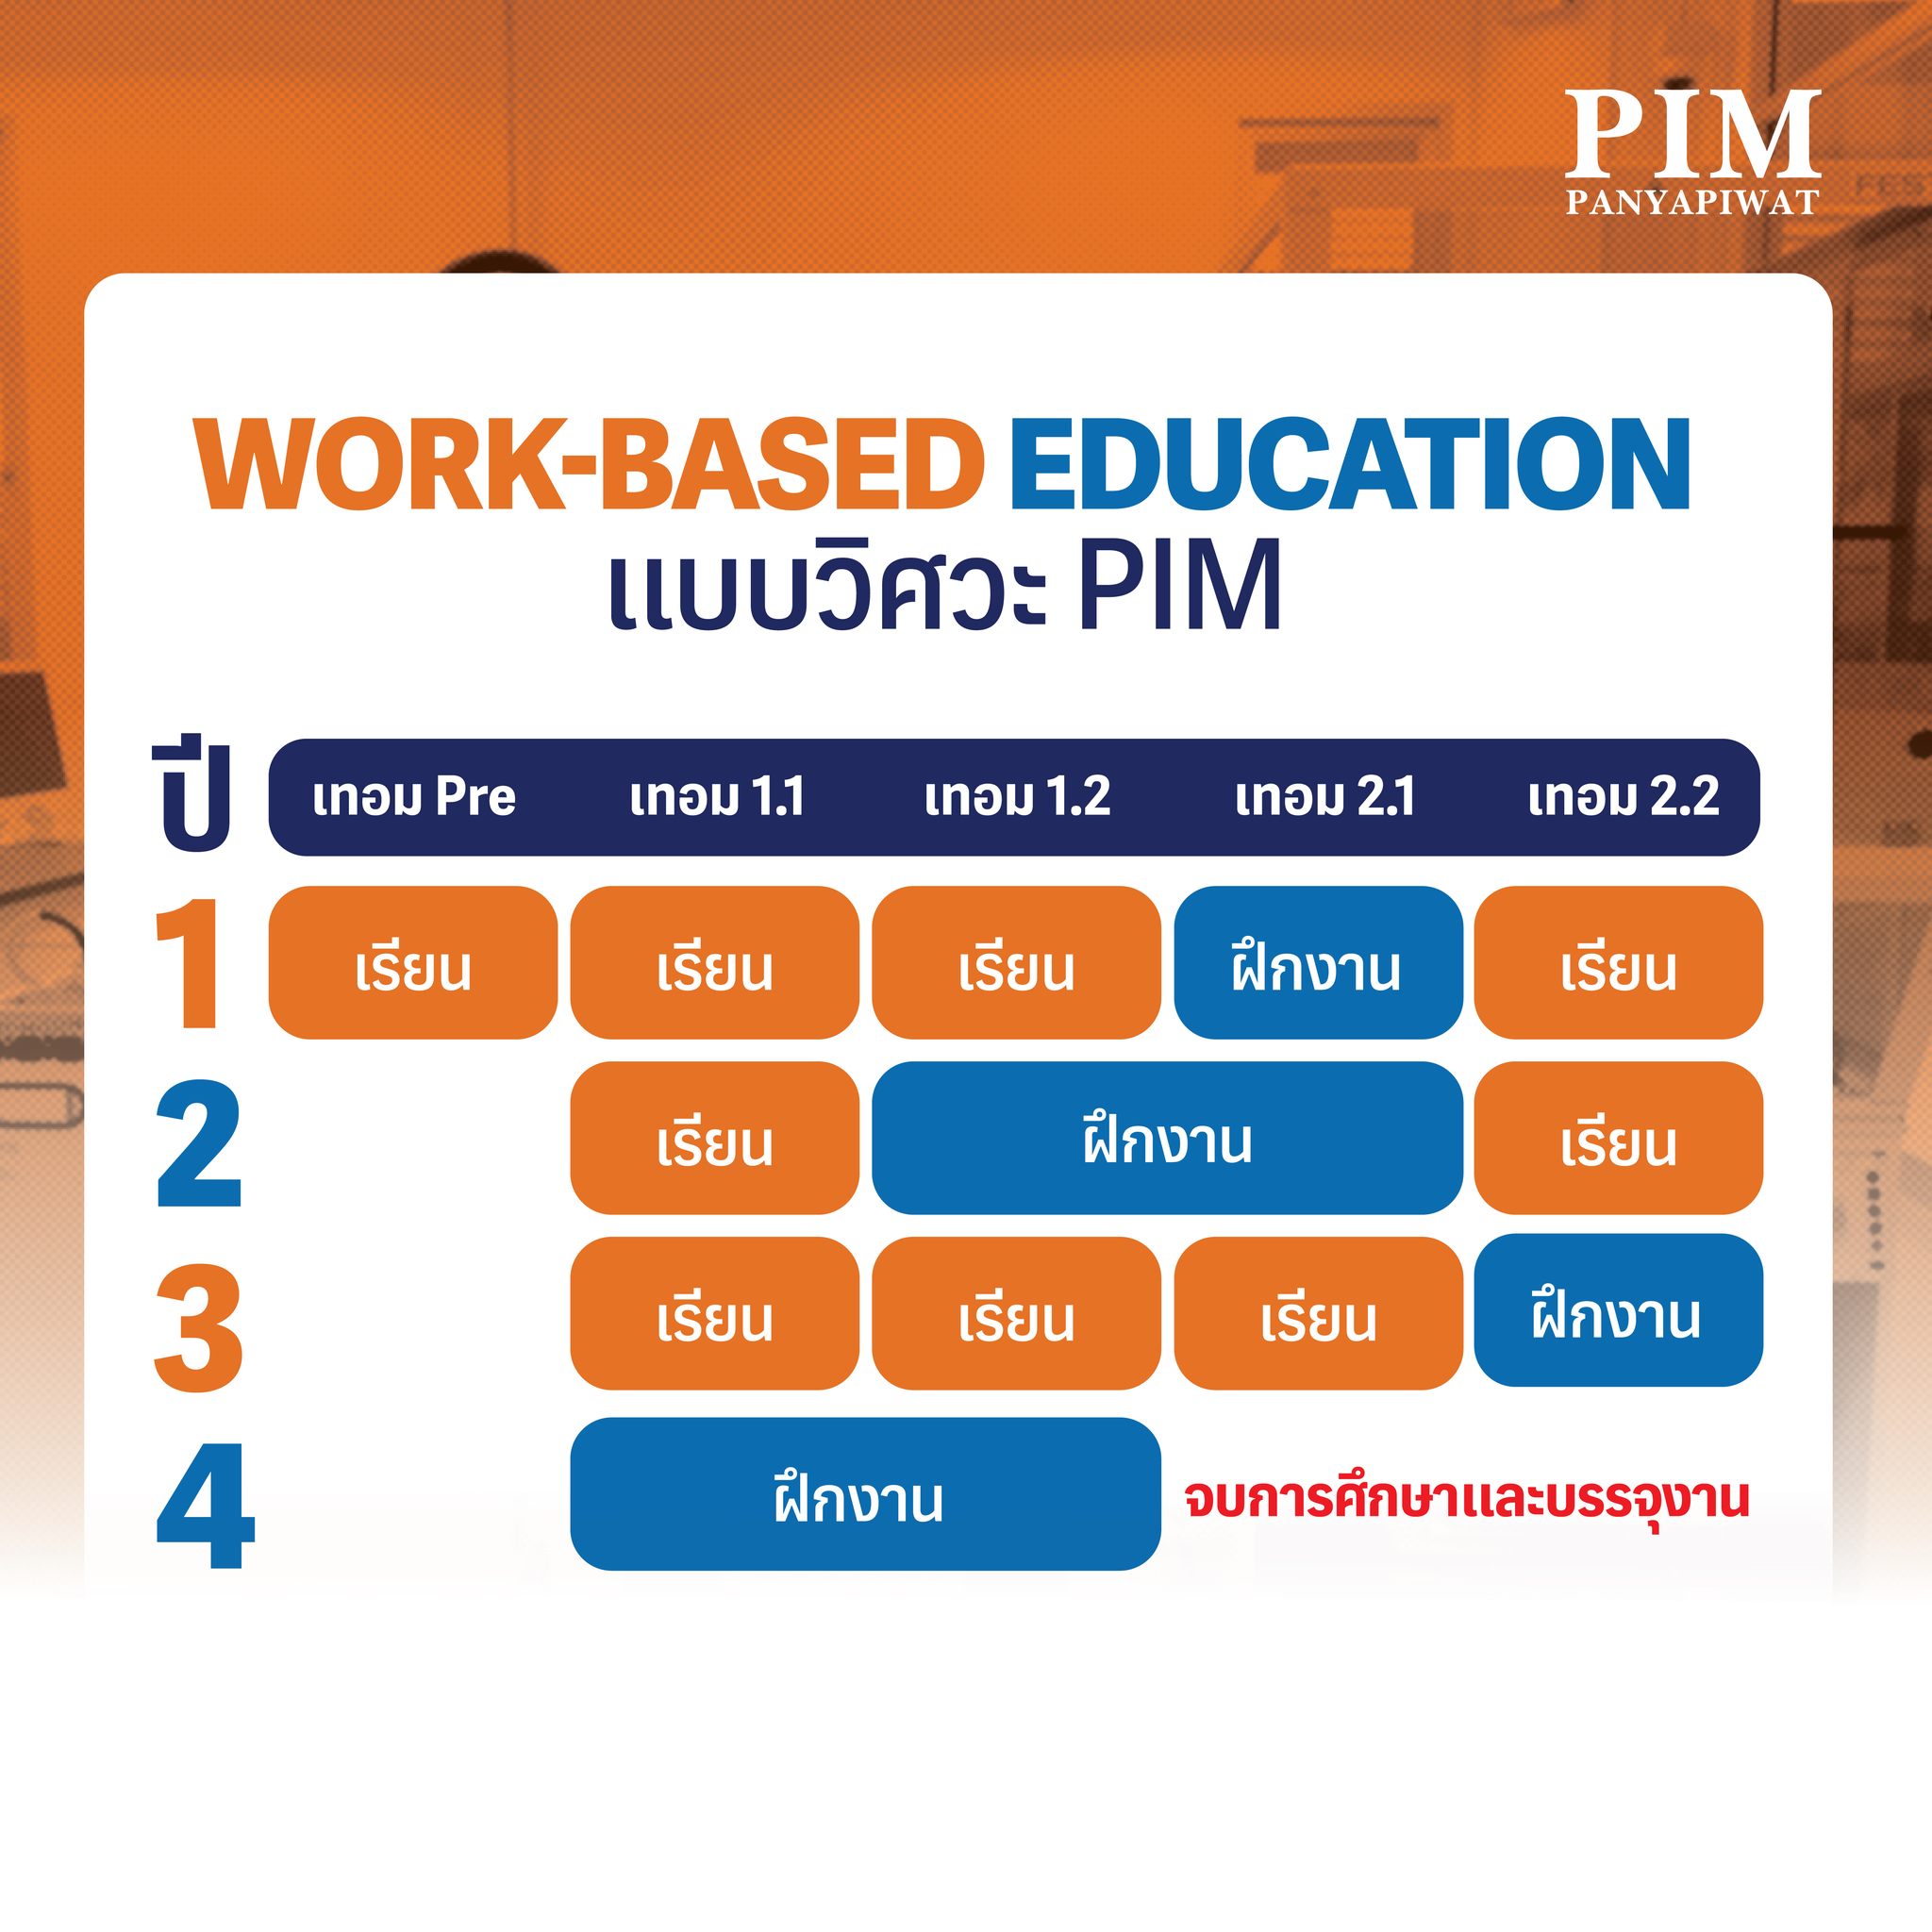 Work-based Education แบบวิศวะ PIM แผนการเรียนแบบ Work-based Education ของคณะวิศวกรรมศาสตร์และเทคโนโลยี PIM มีทั้งช่วงเวลาเรียนและช่วงเวลาในการฝึกปฏิบัติงาน เพื่อให้นักศึกษาของเราได้รับความรู้ทางวิชาการจากในห้องเรียน และได้ฝึกฝนทักษะและประสบการณ์กับบริษัทองค์กรพันธมิตร